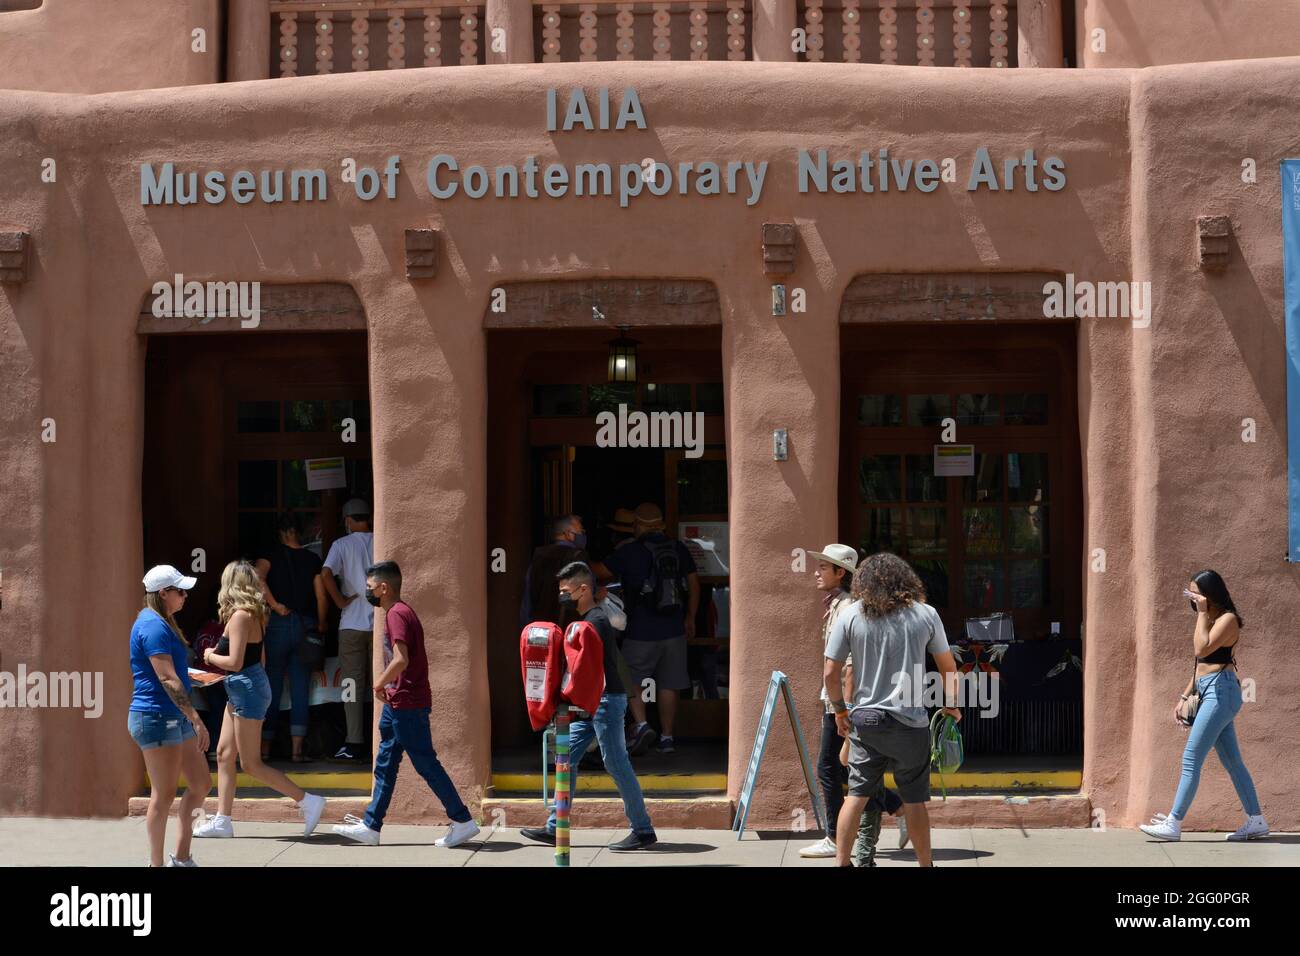 Les visiteurs de Santa Fe, au Nouveau-Mexique, se prometent devant le Musée des arts contemporains autochtones de la ville Banque D'Images